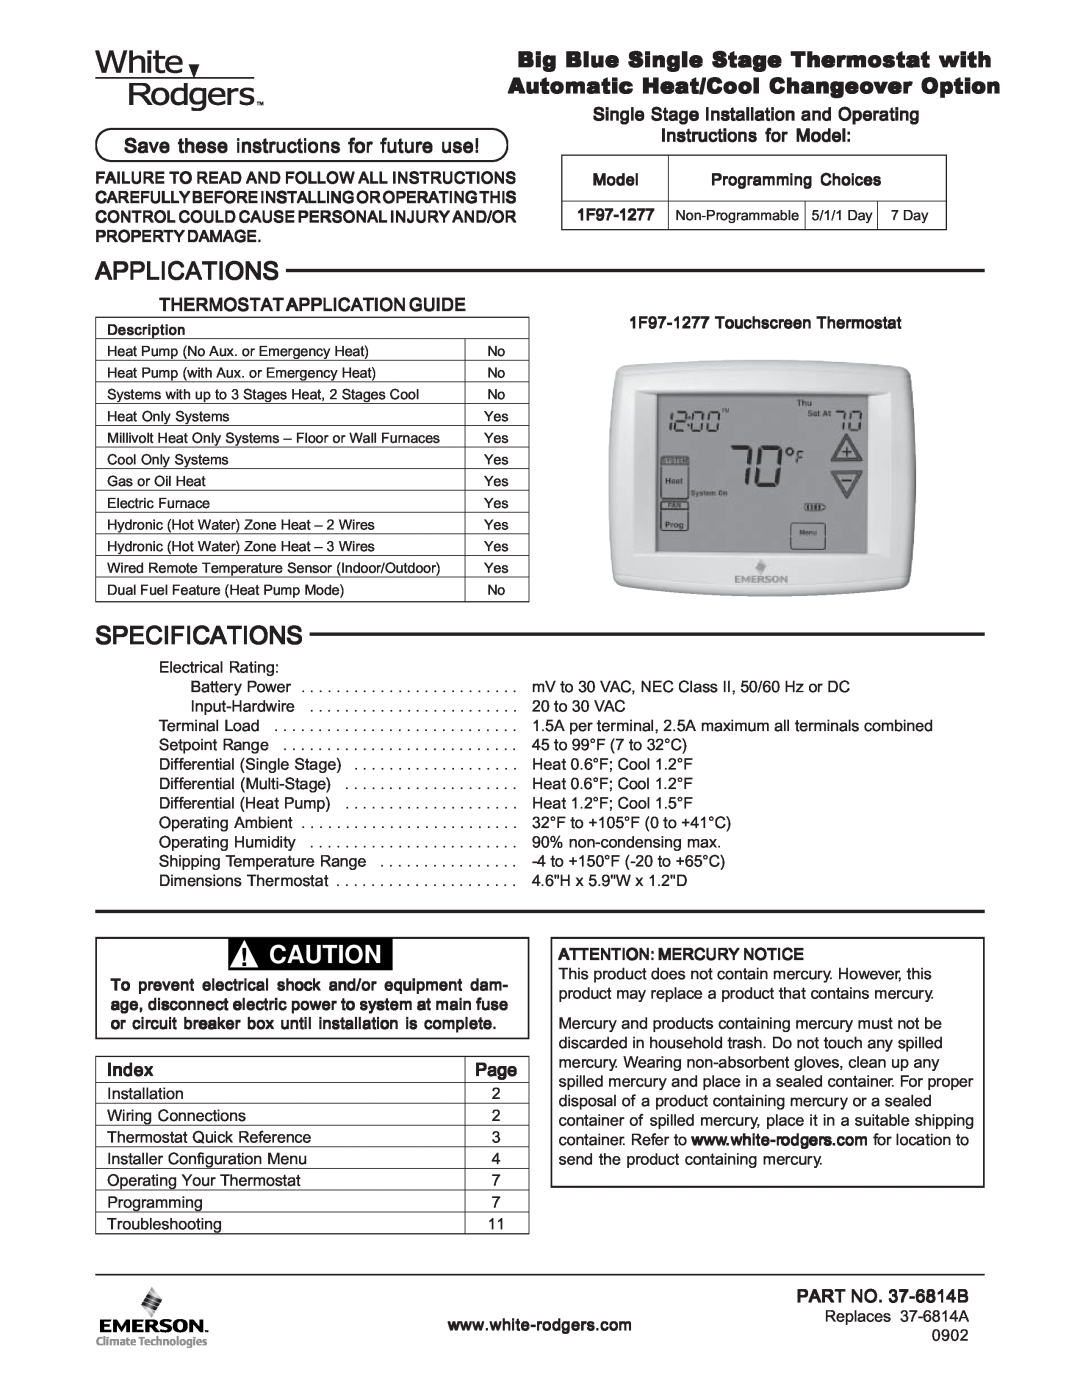 White Rodgers 1F97-1277 manual Especificaciones, ¡Precaución, Guía De Aplicaciones Del Termostato, Índice, Página 